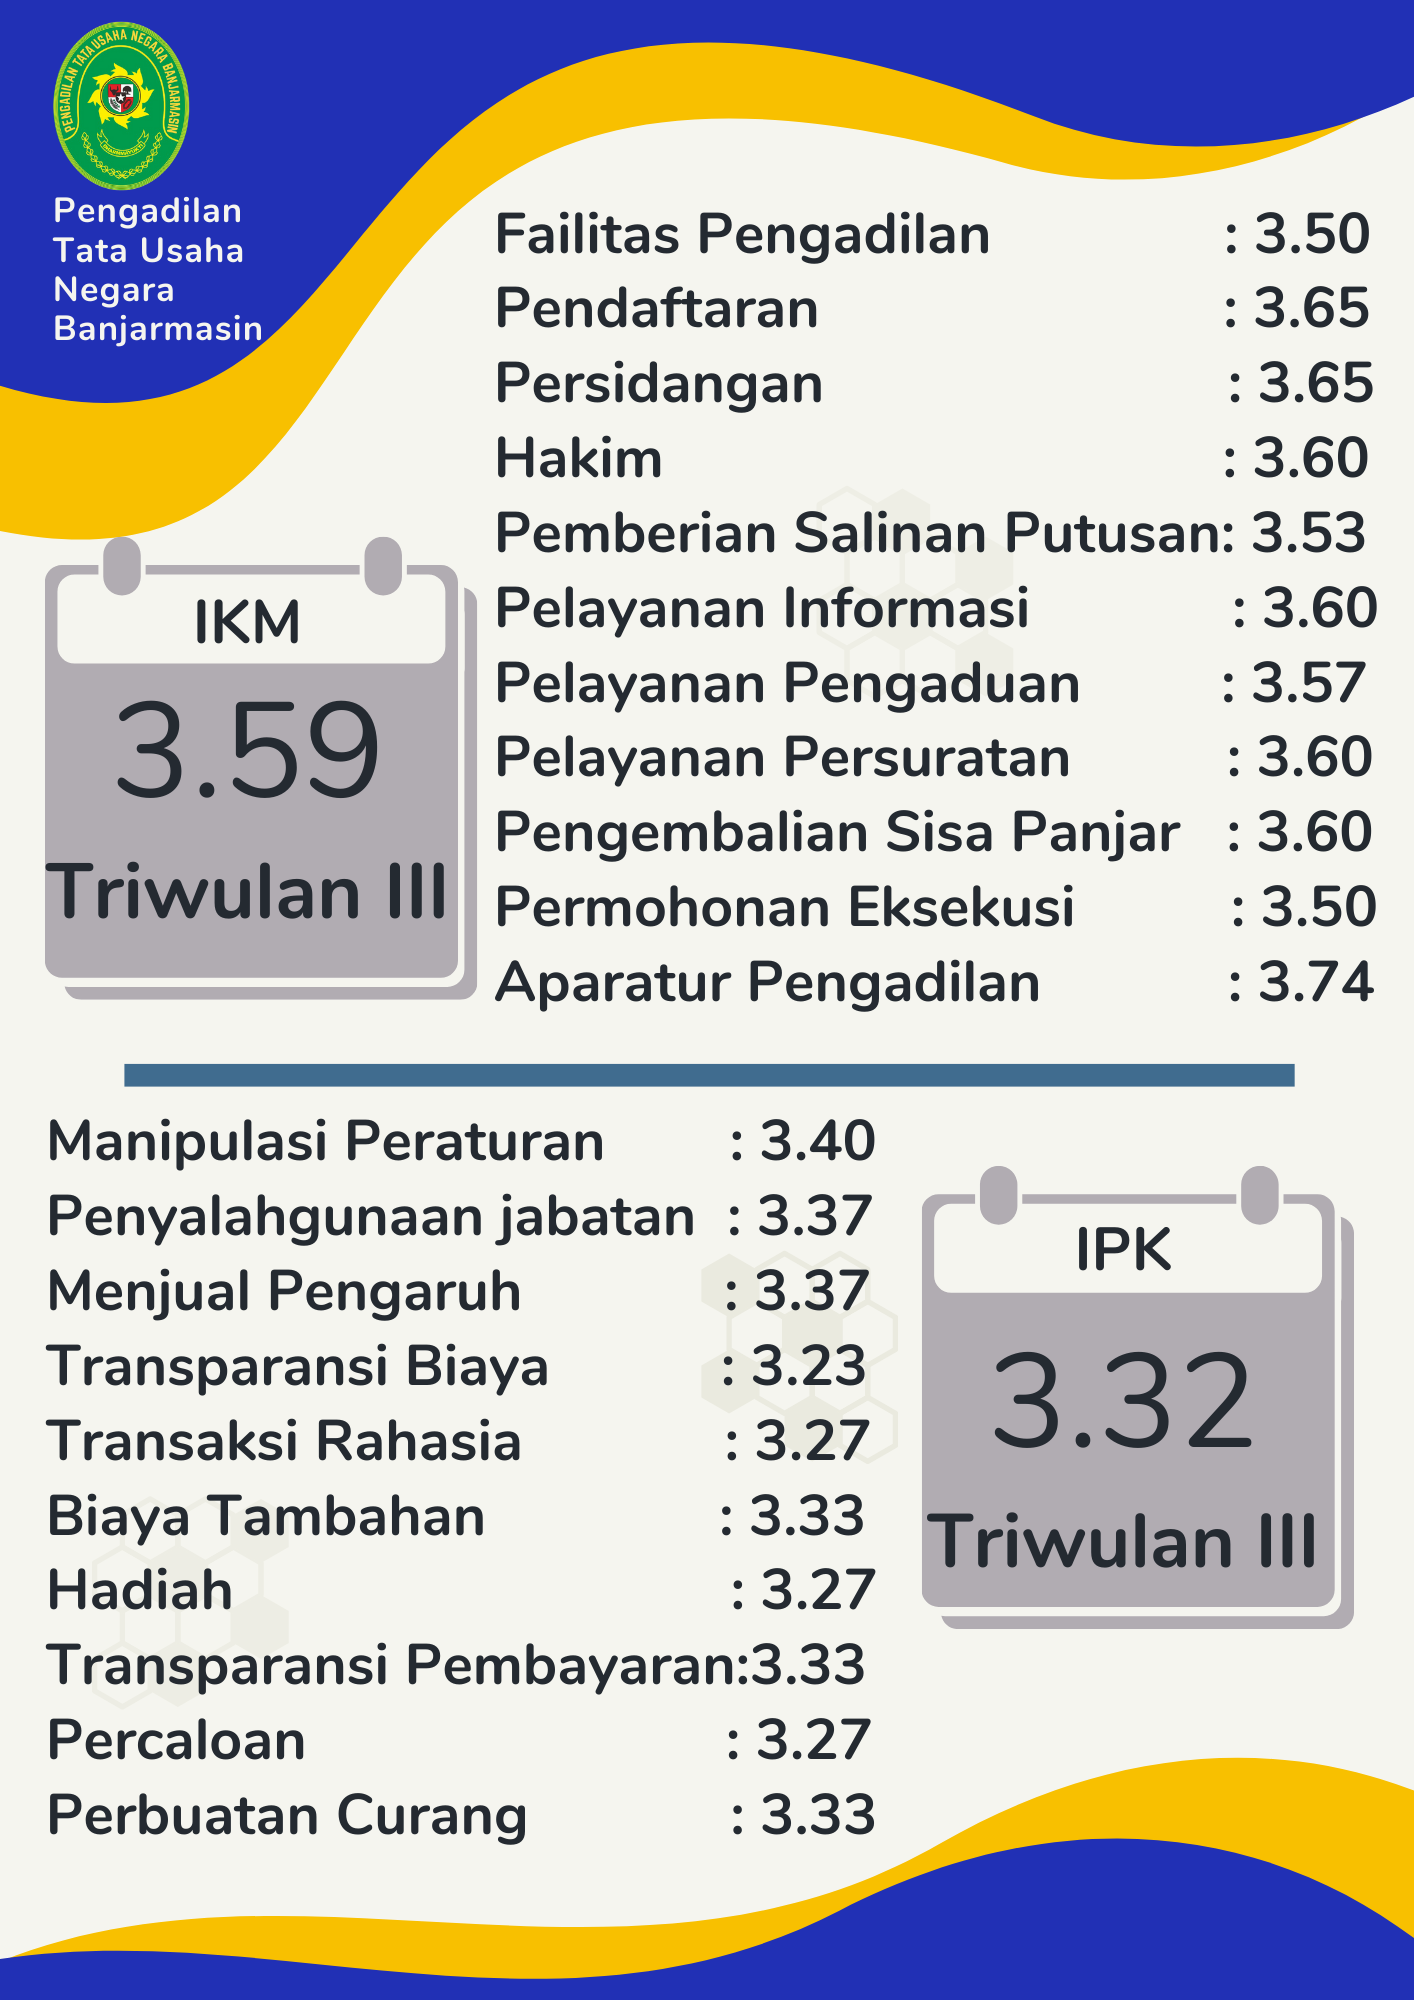 IKM 3.61 Triwulan III 1